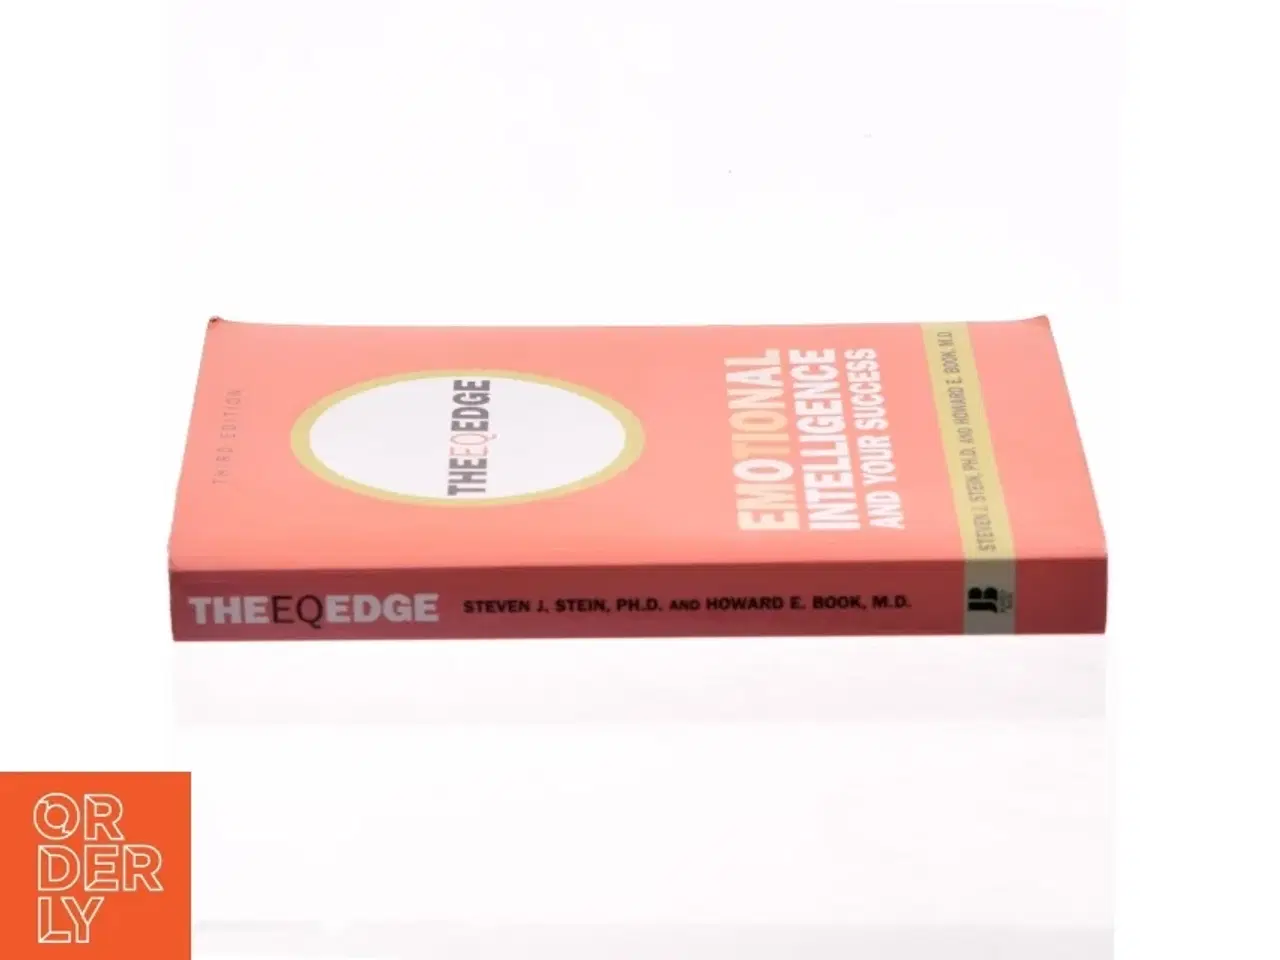 Billede 2 - The Eq Edge : Emotional Intelligence and Your Success (Edition 3) (Paperback) af Stein, Steven J. / Book, Howard E. (Bog)